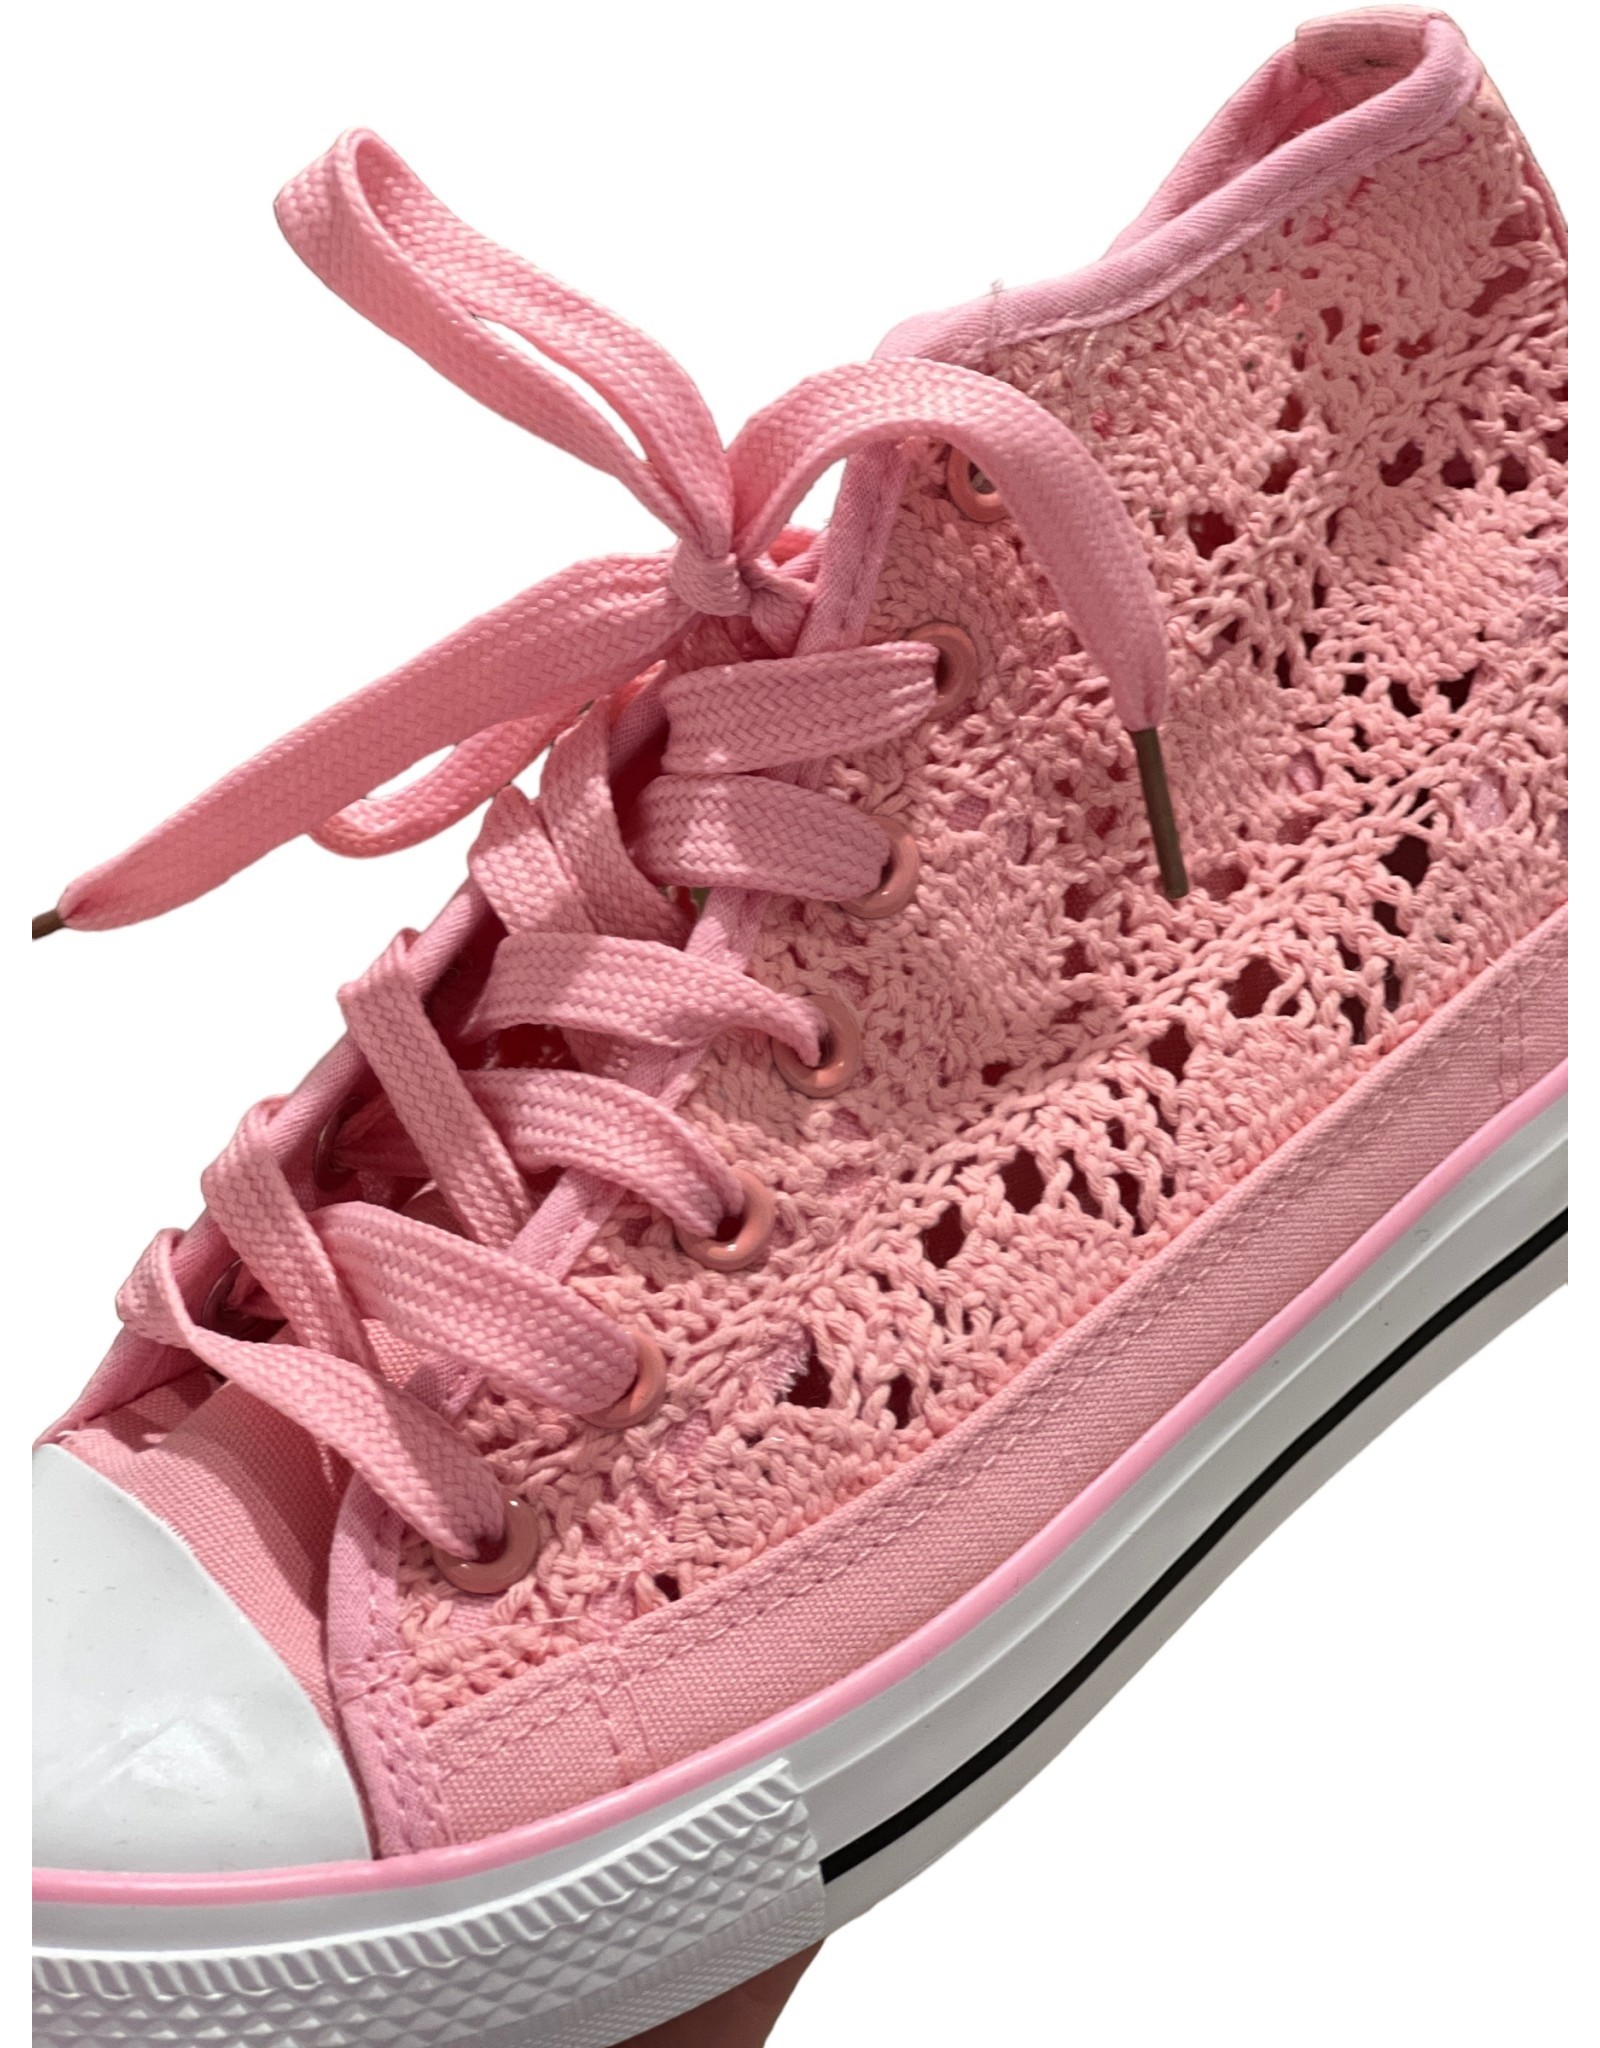 Sneaker roze hoog model in kant